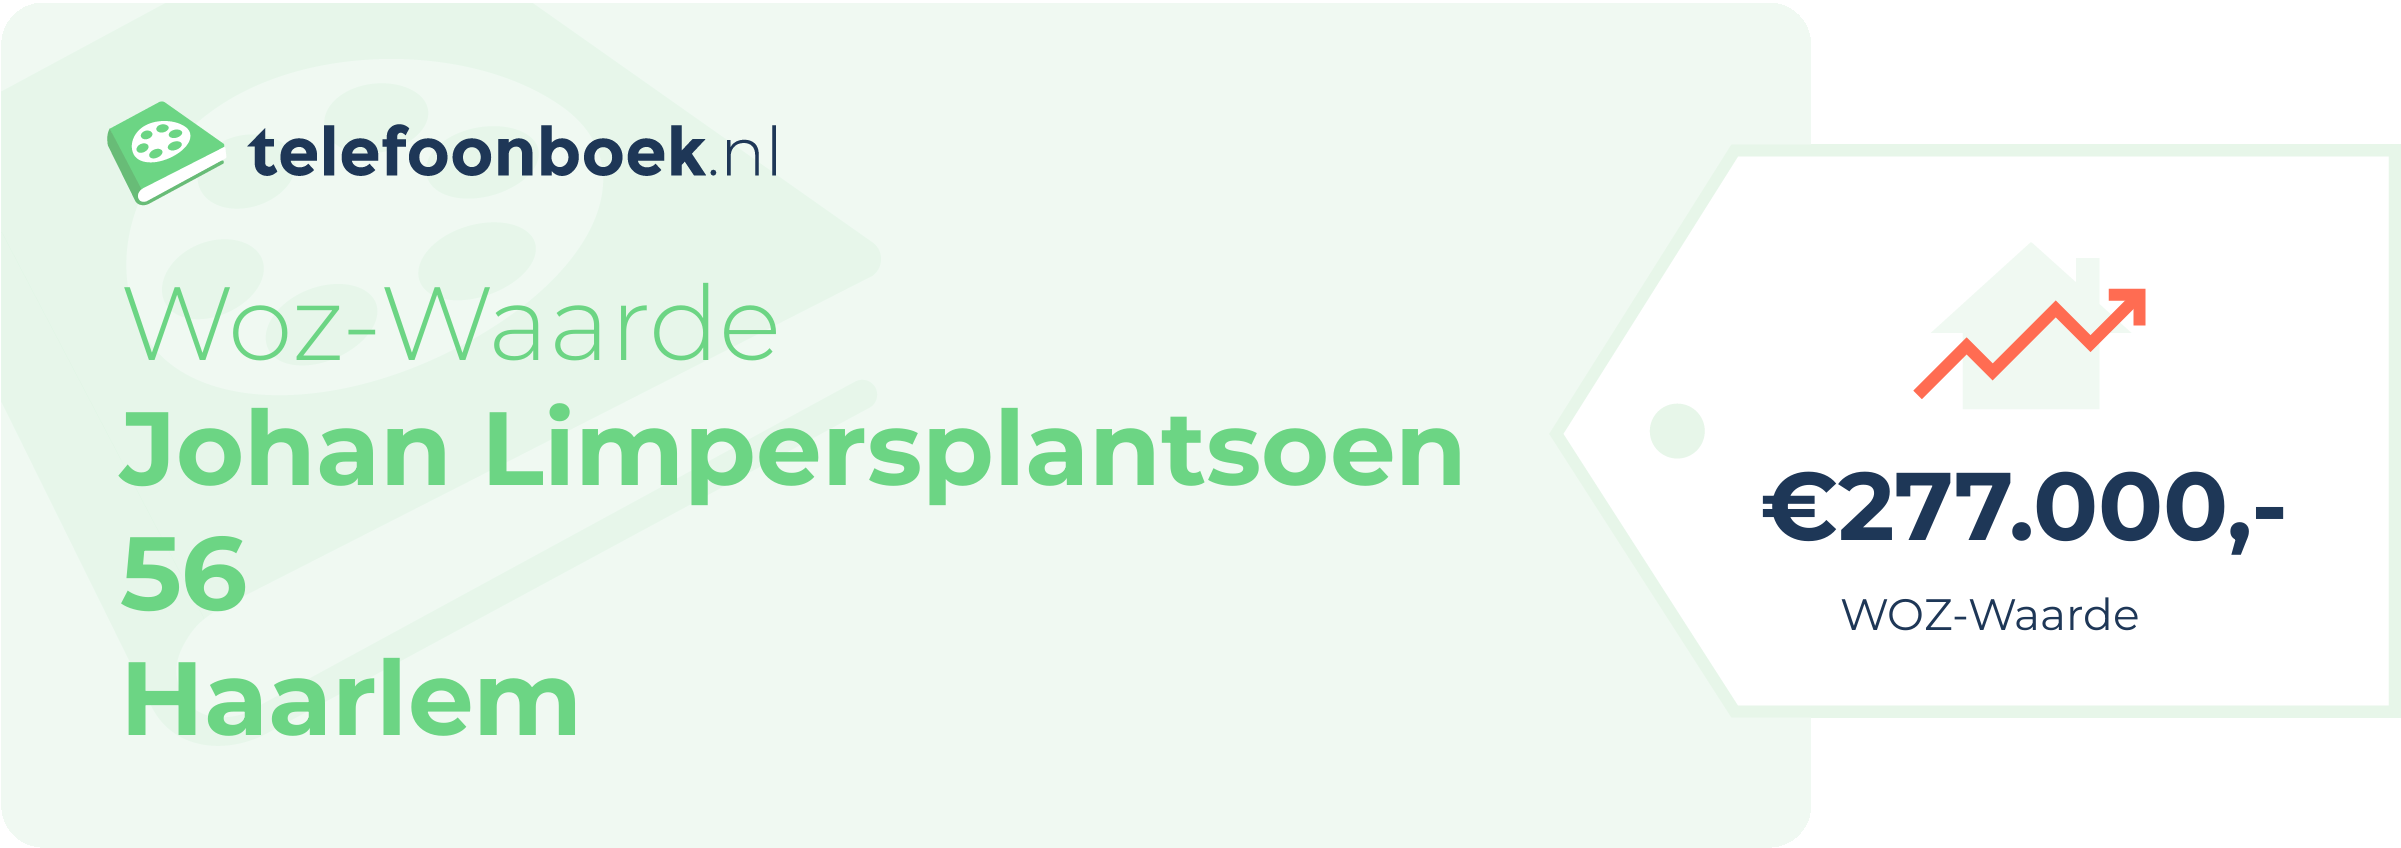 WOZ-waarde Johan Limpersplantsoen 56 Haarlem